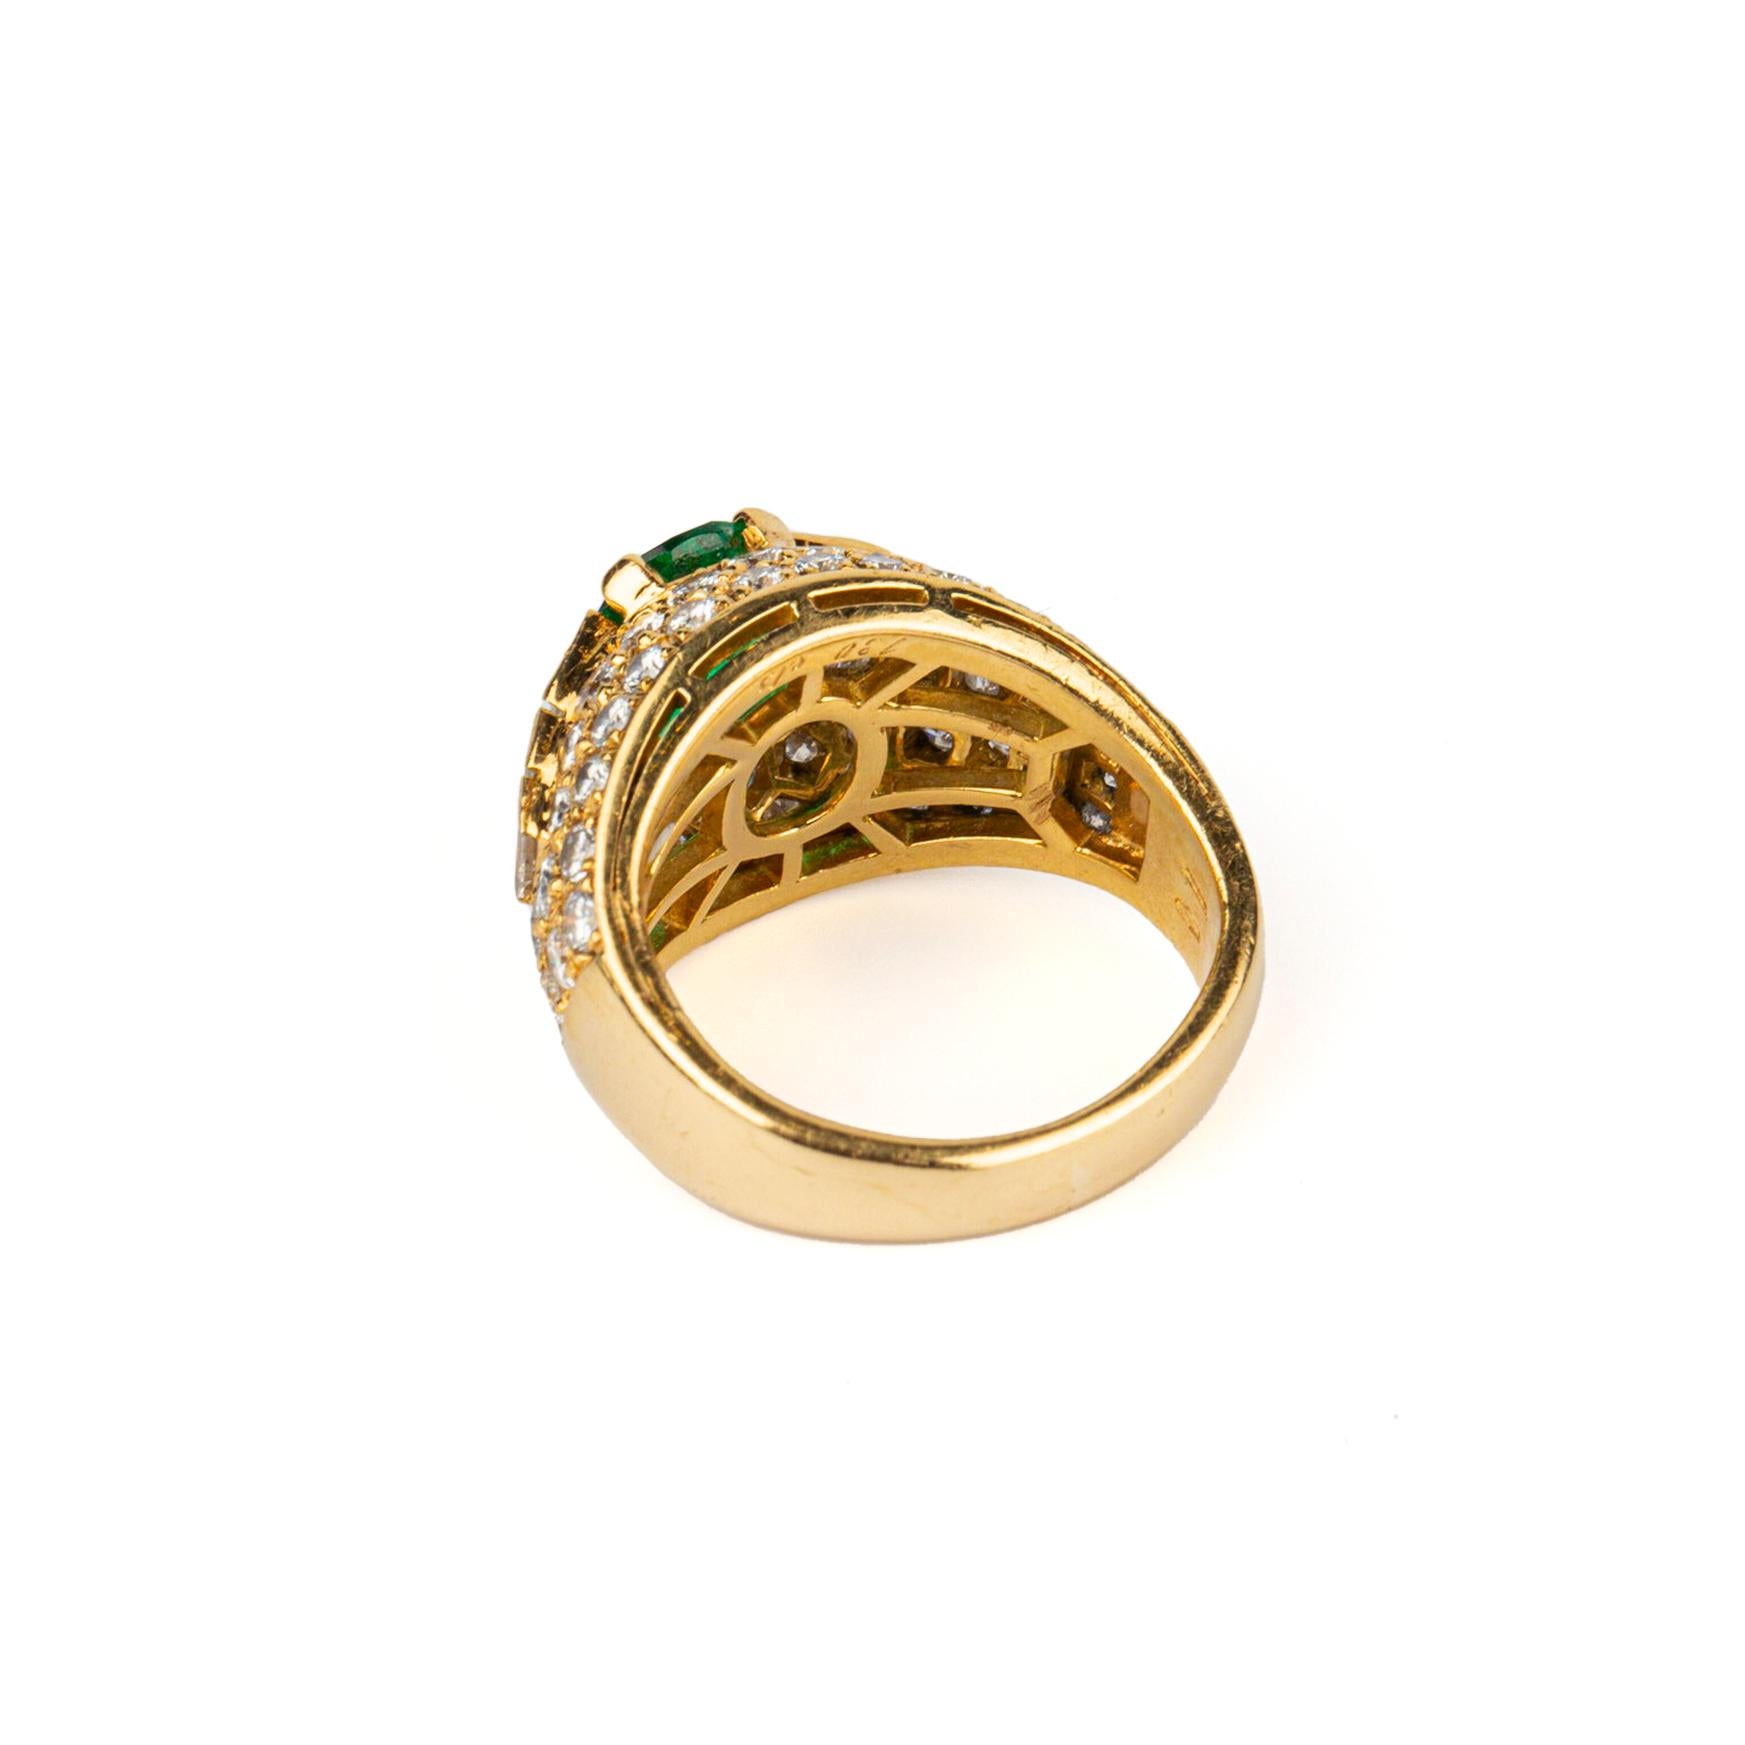 Oval Cut Bulgari Trombino Emerald and Diamond Ring 